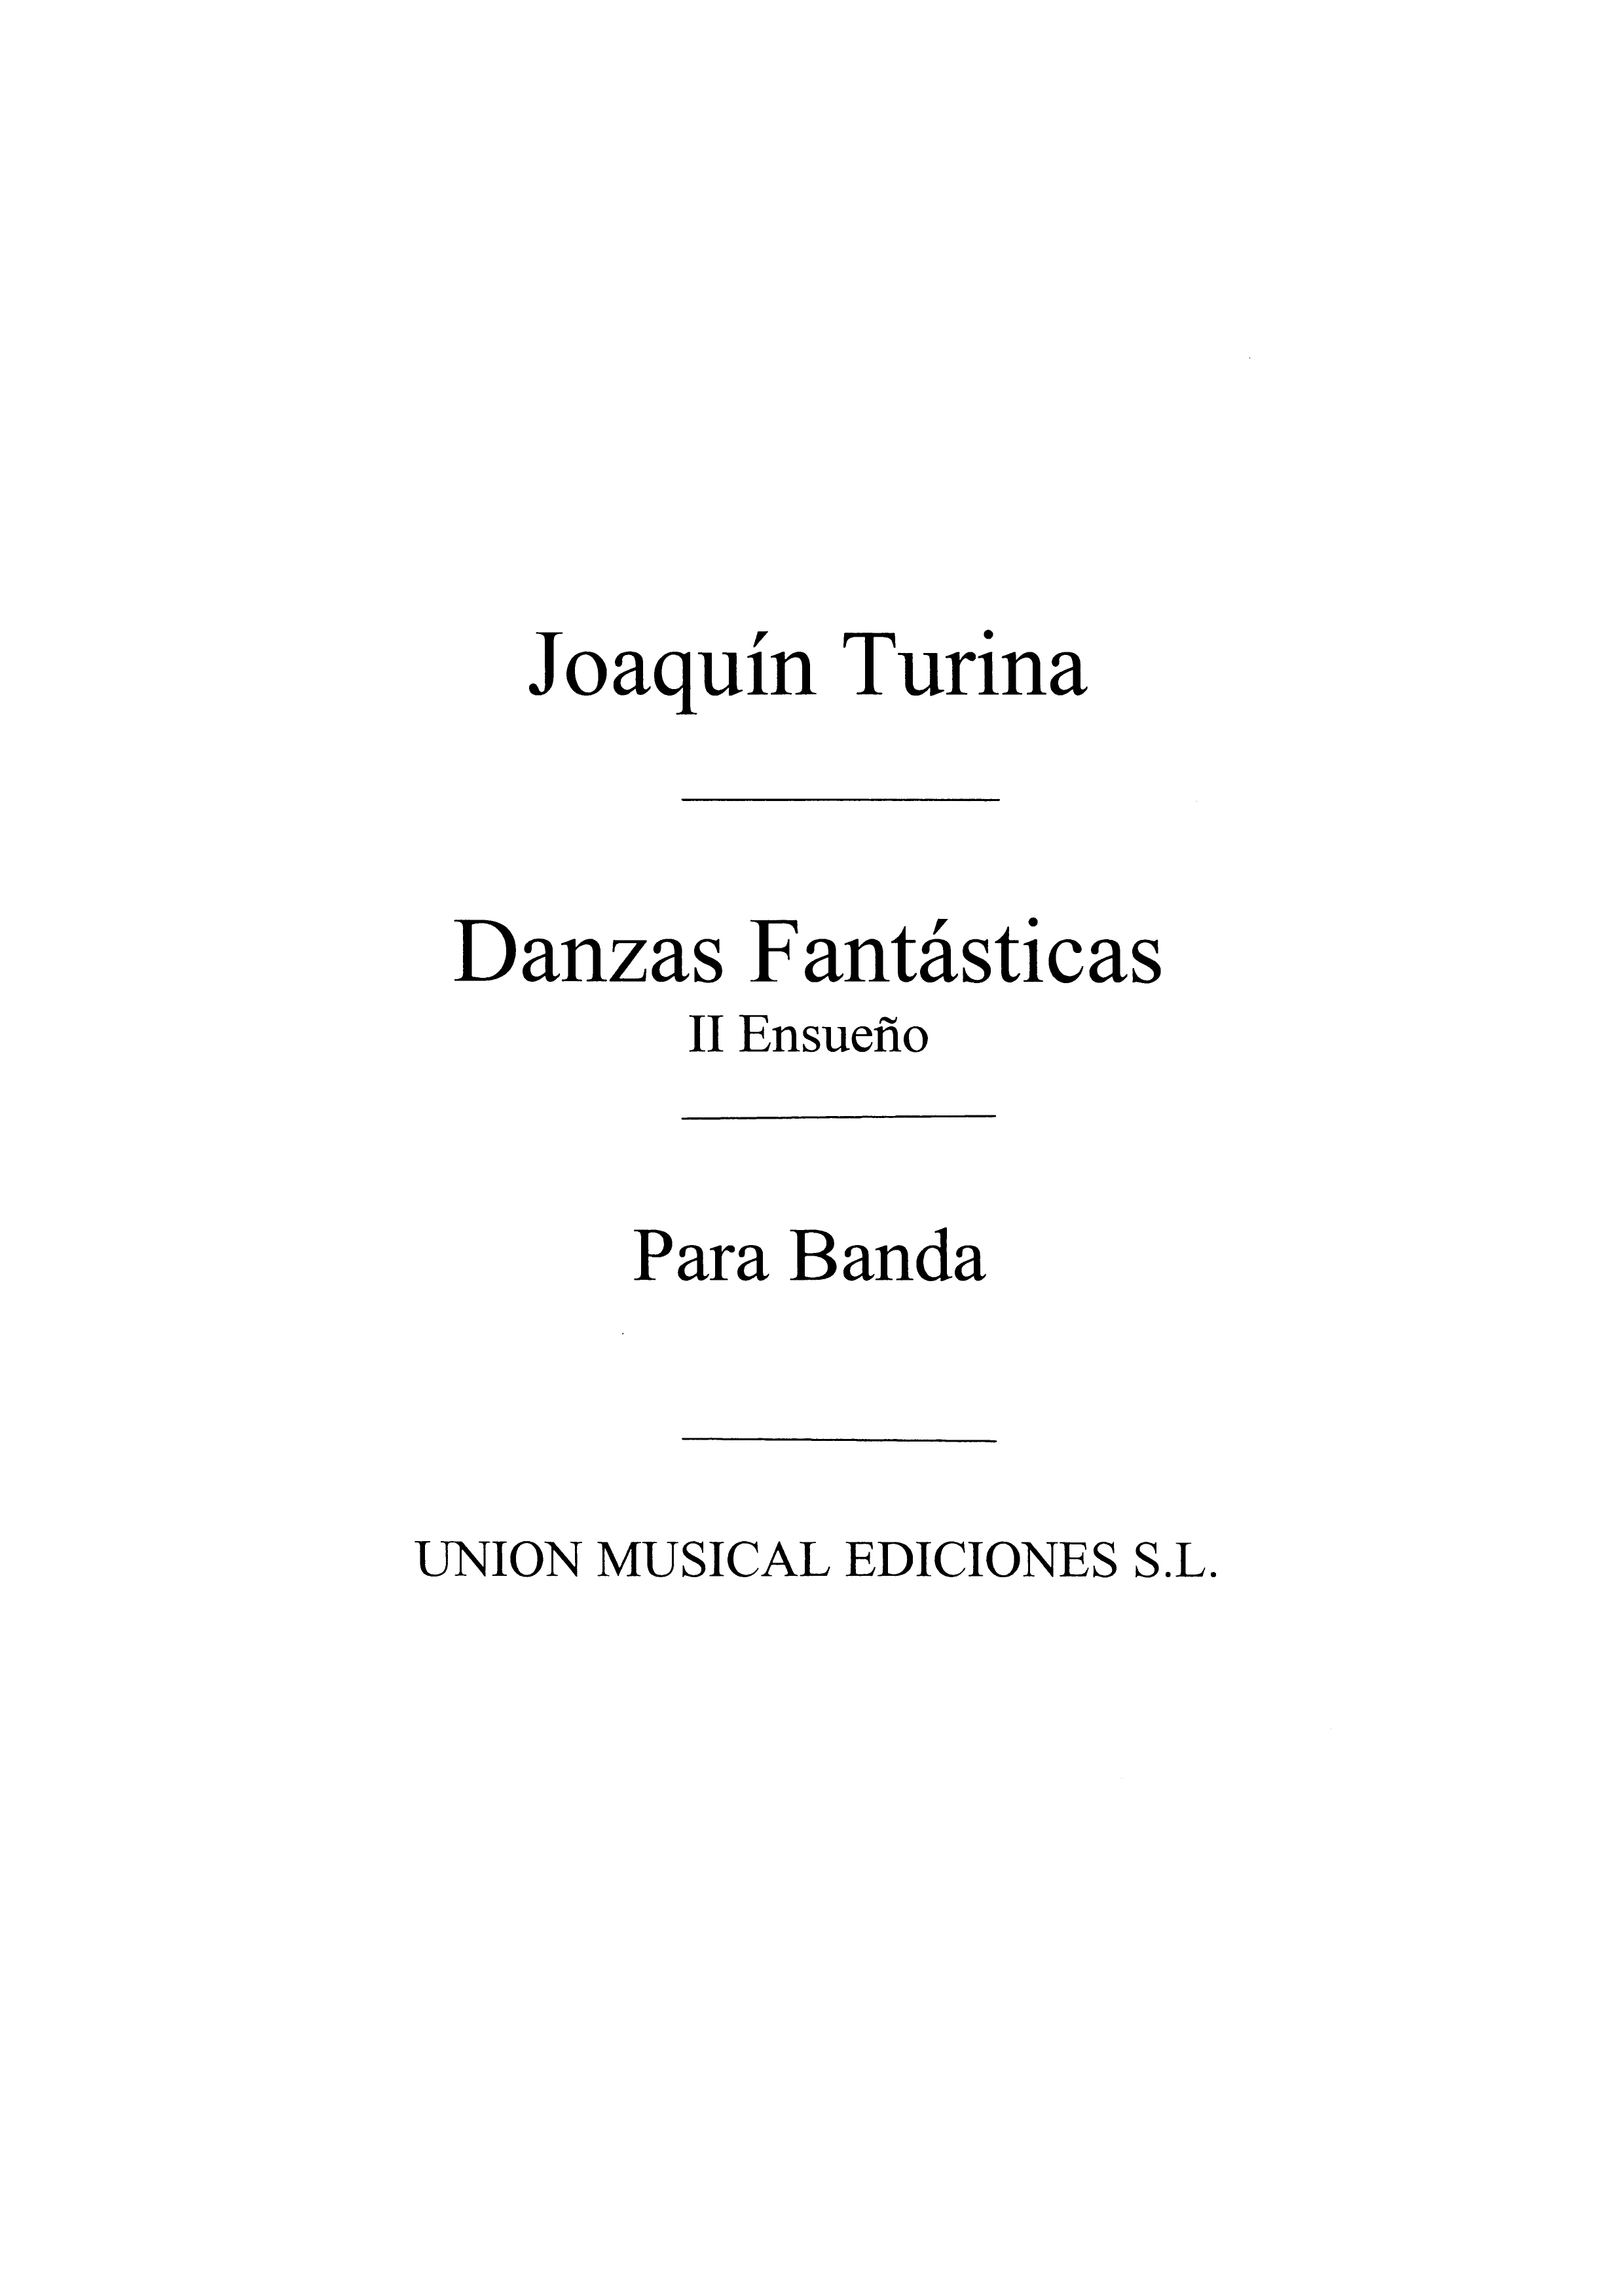 Turina: Ensueno from Danzas Fantasticas No.2 for Band